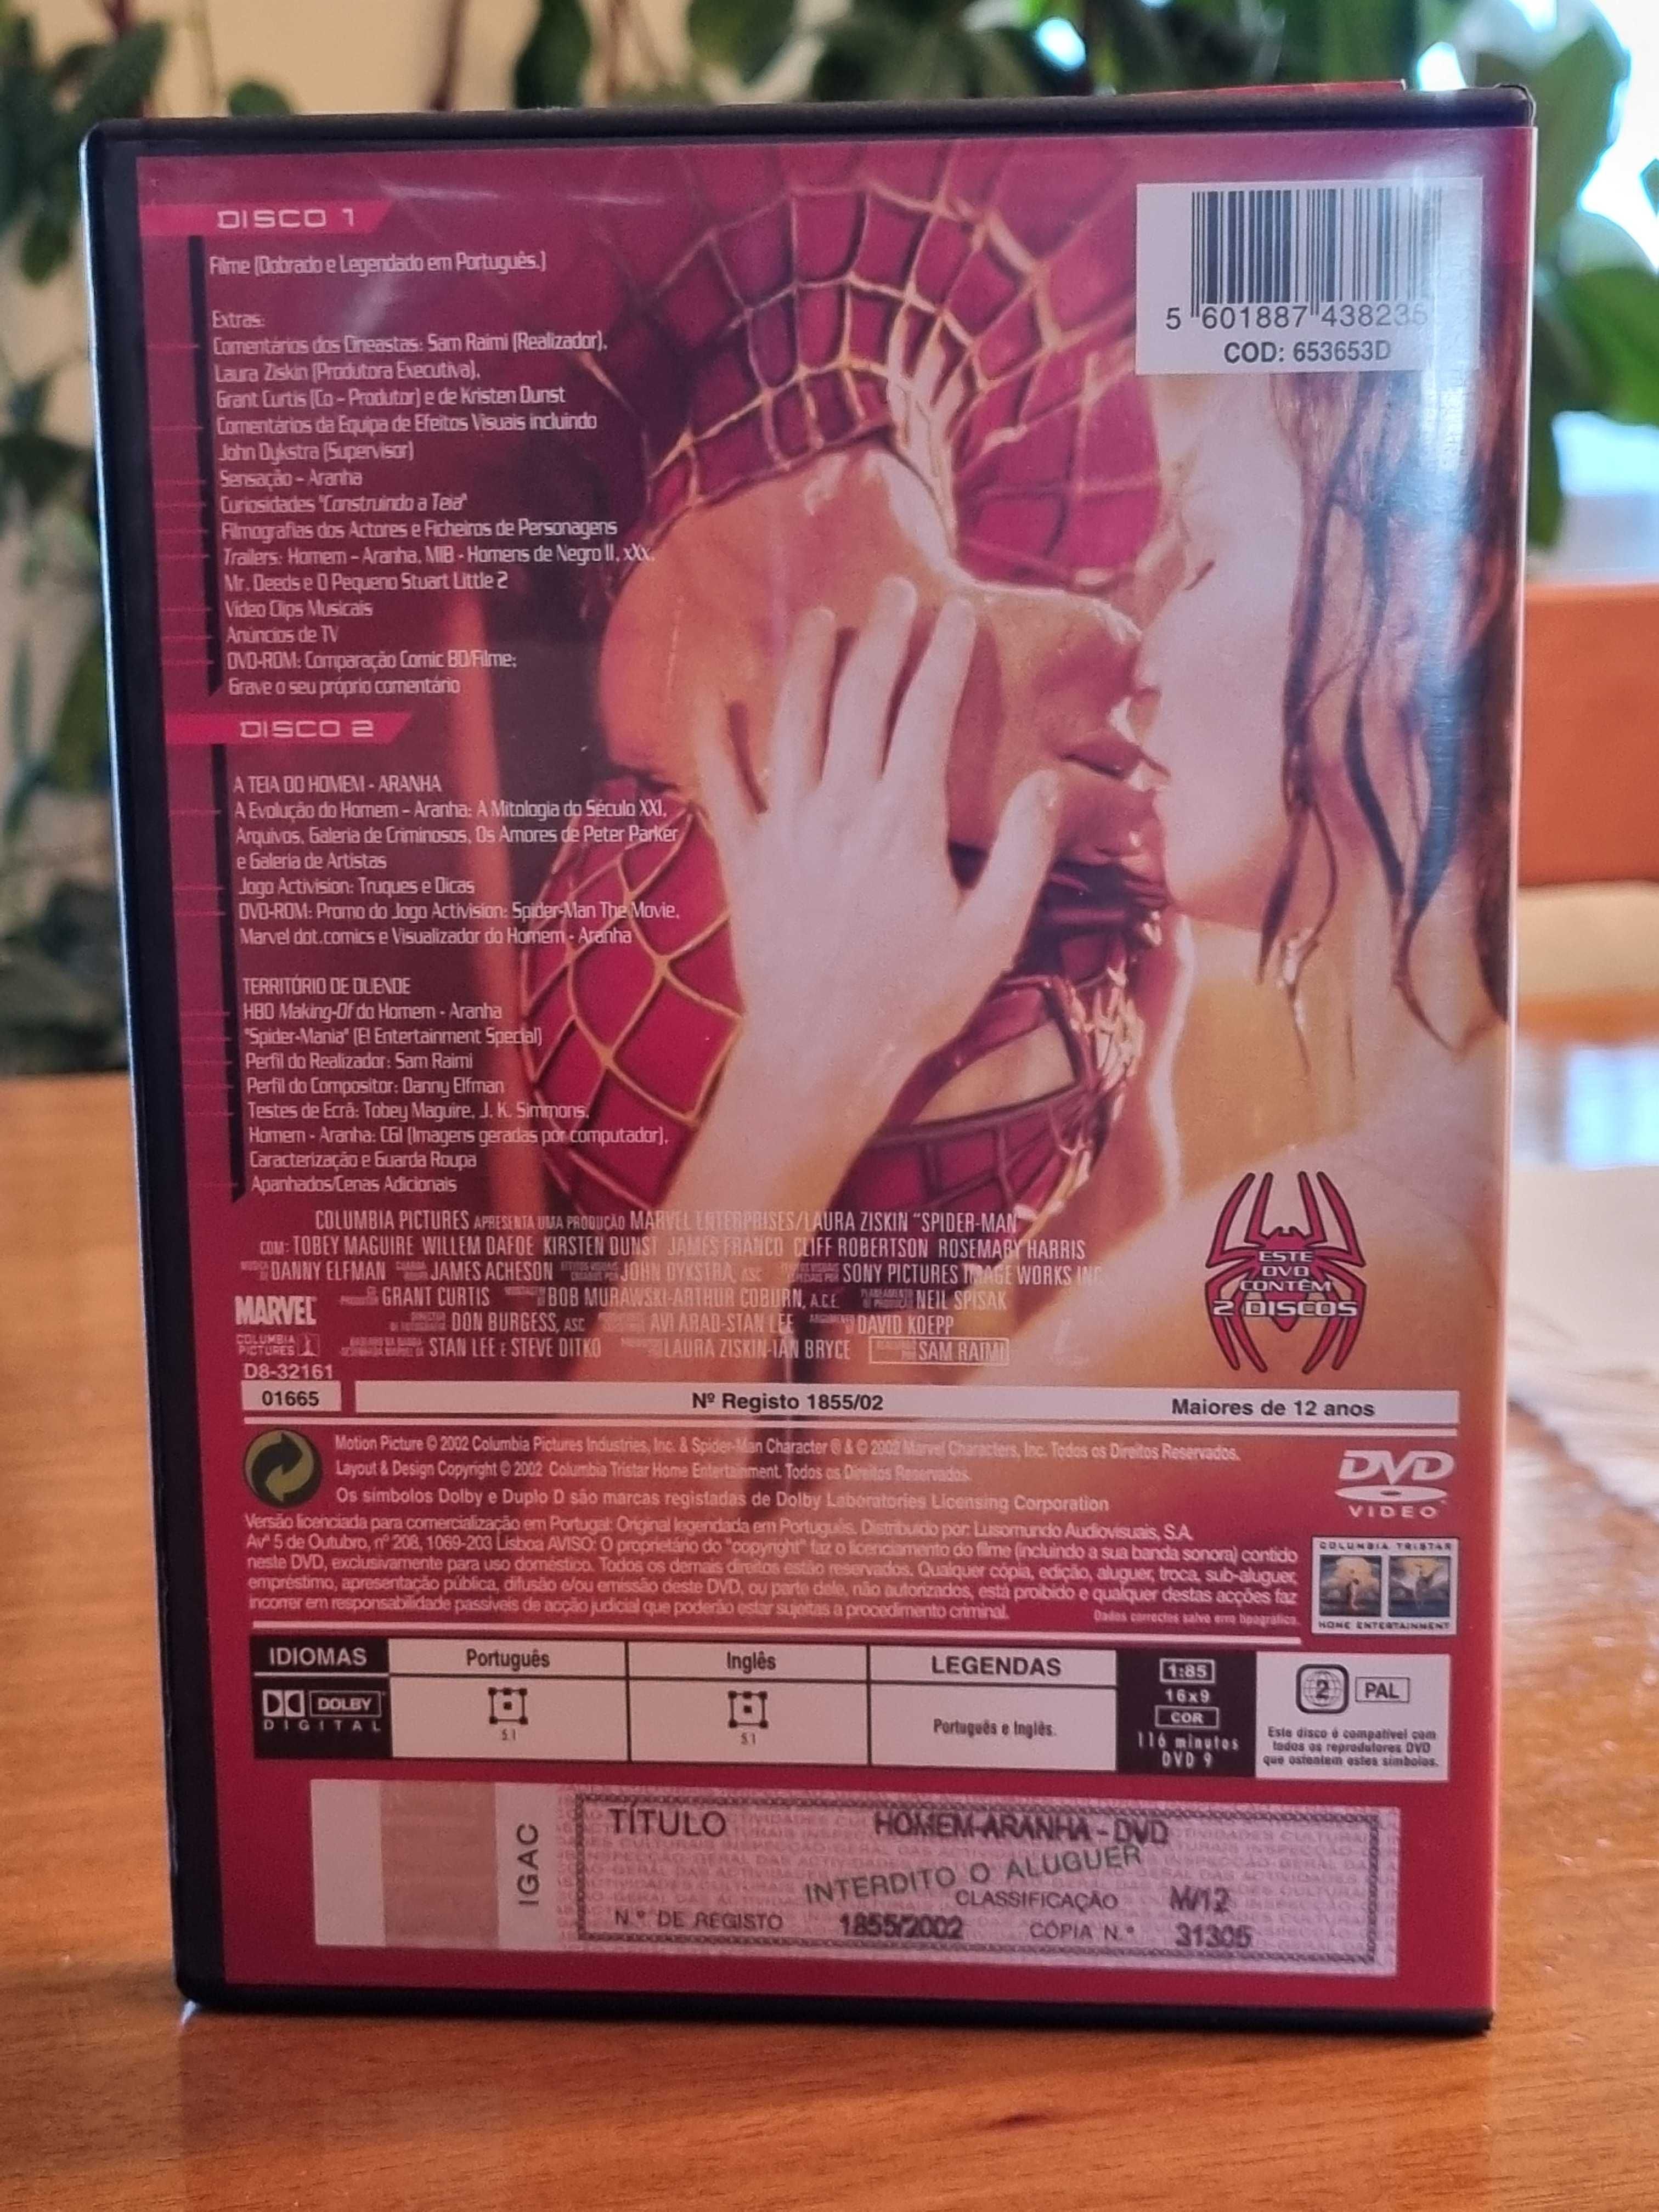 Vendo DVD Filme "SPIDER-MAN" ( c/ Tobey Maguire e Kirsten Dunst, 2002)